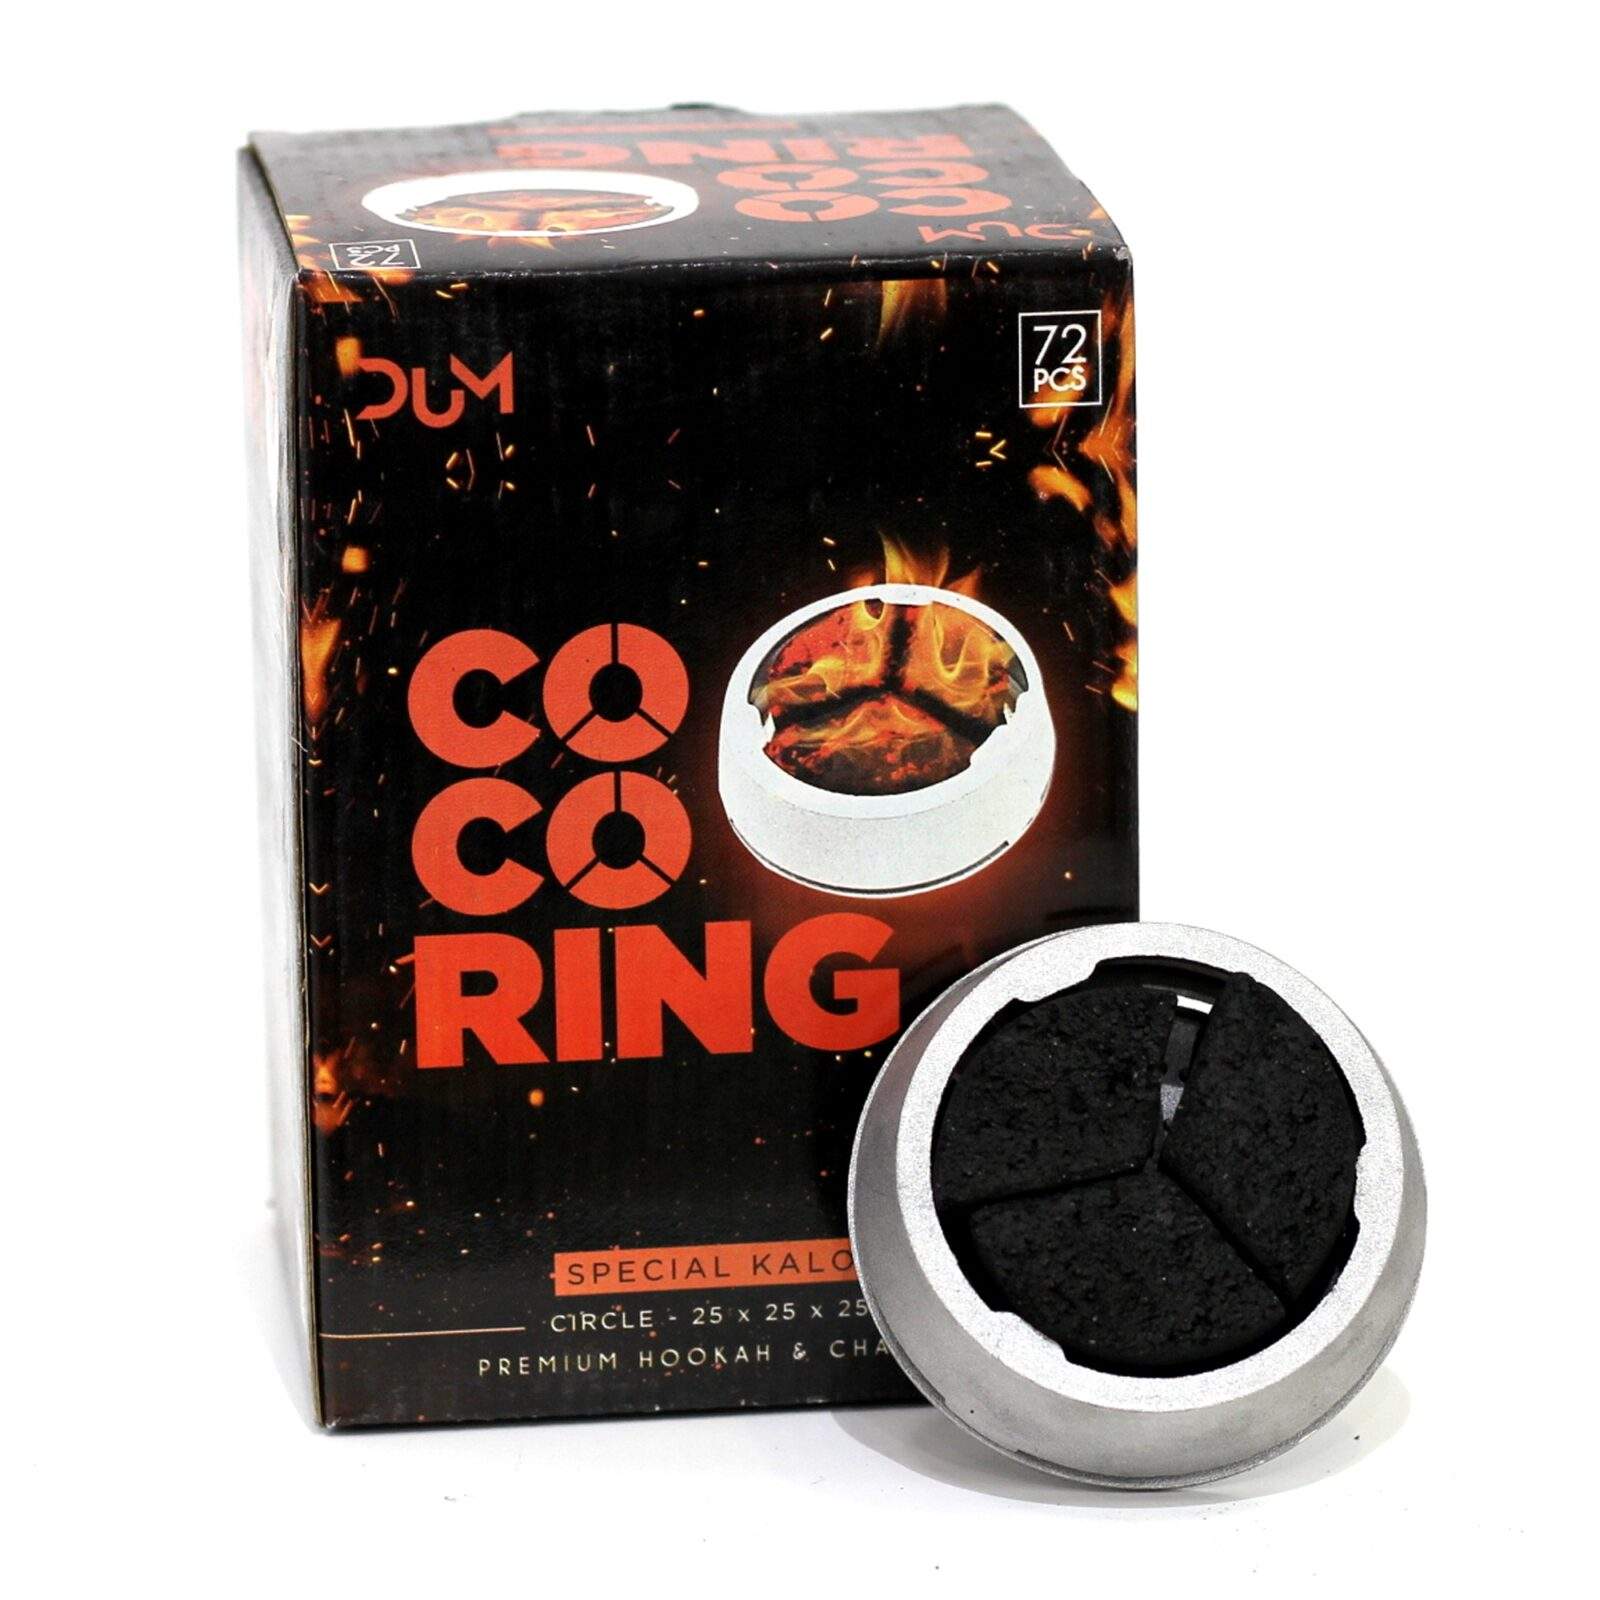 DUM COCO RING